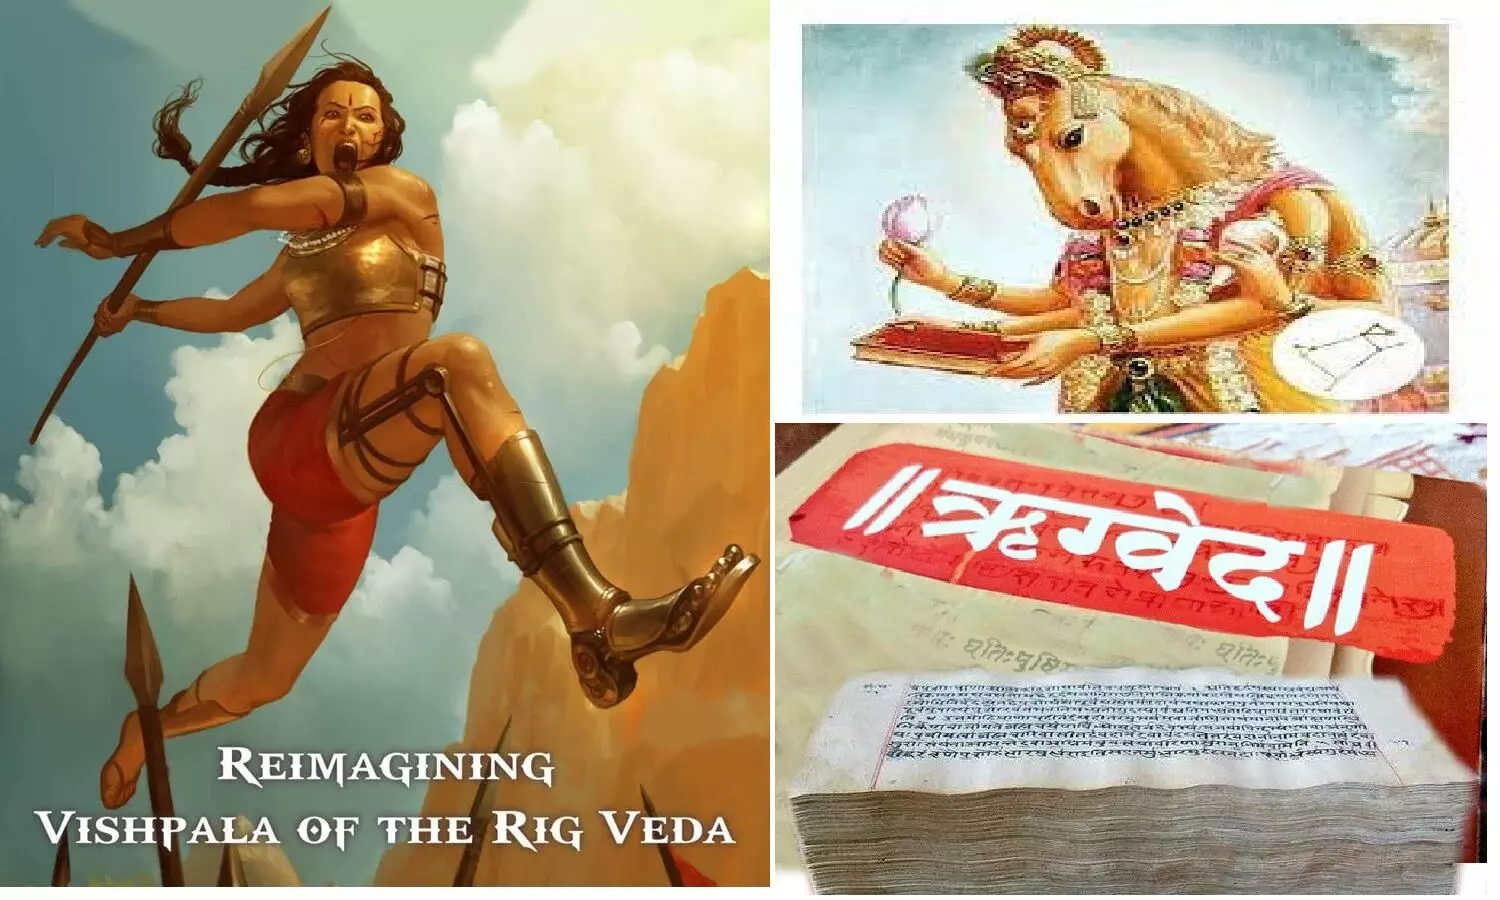 Story Of Vishpala: विश्पला, वैदिक काल की ऐसी वीरांगना जिसकी एक टांग लोहे से बनी थी, ऋग्वेद में लिखा है